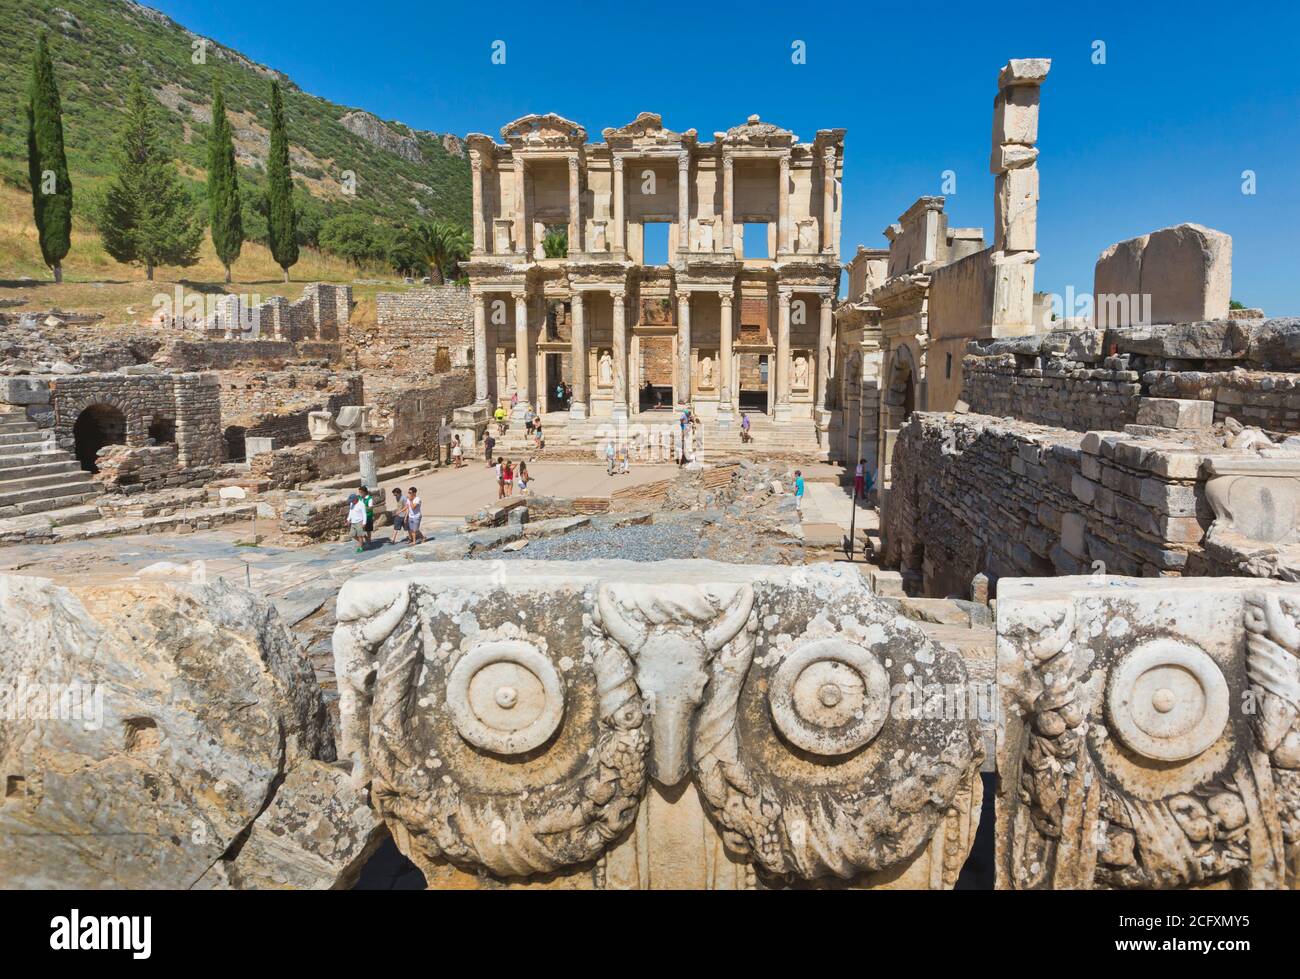 Ephèse, près de Selcuk, province d'Izmir, Turquie. Bibliothèque de Celsus, datant de 125 AD. Ephèse est un site classé au patrimoine mondial de l'UNESCO. Banque D'Images